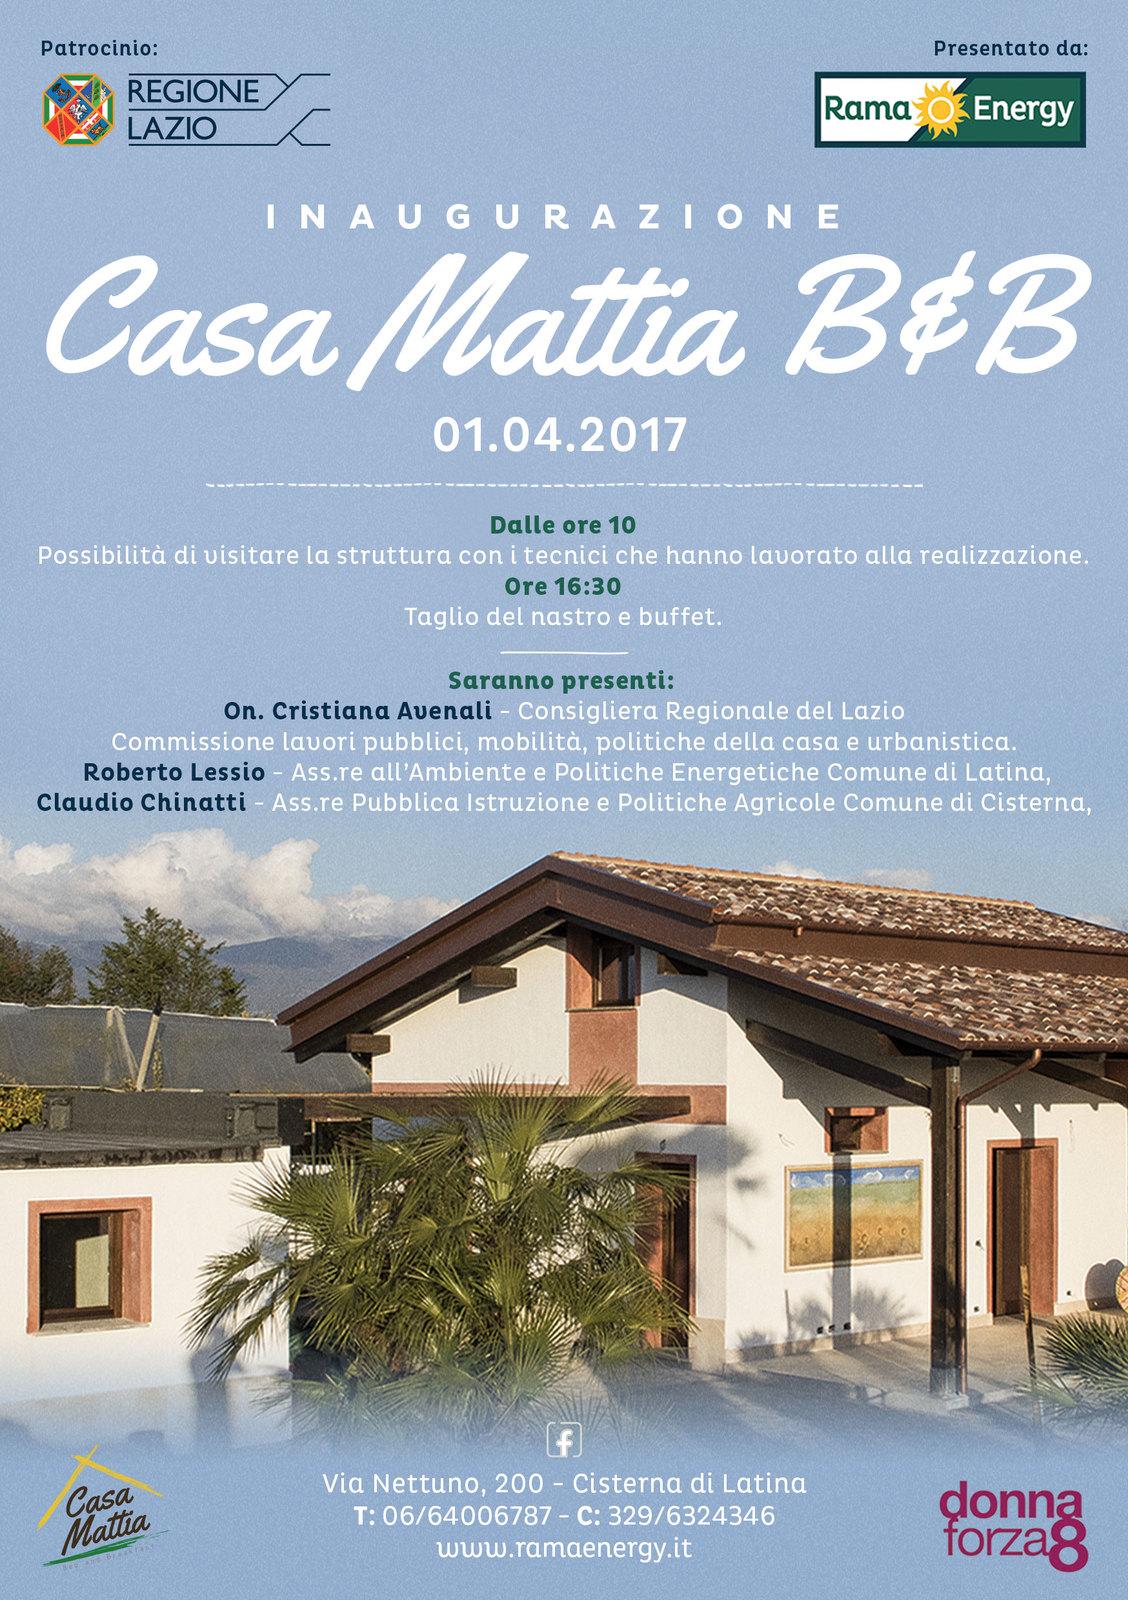 Inaugurata Casa Mattia, il b&b in paglia e legno